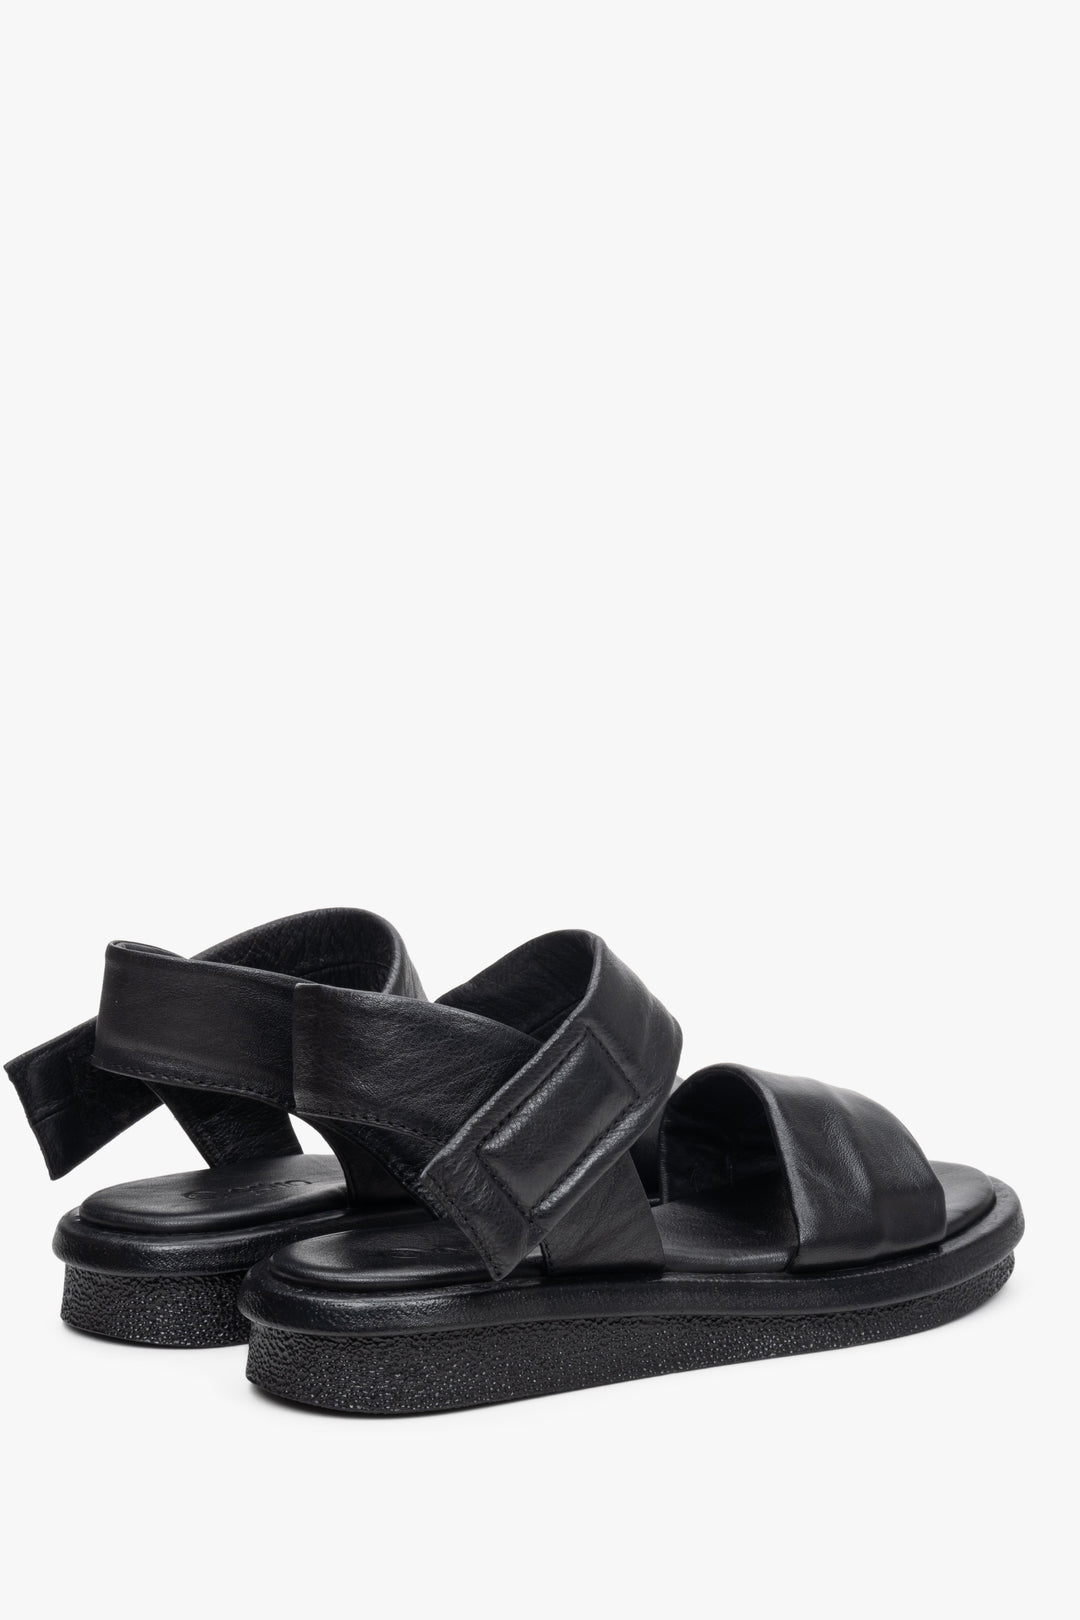 Skórzane, czarne sandały damskie na lato marki Estro - prezentacja tylnej części obuwia.